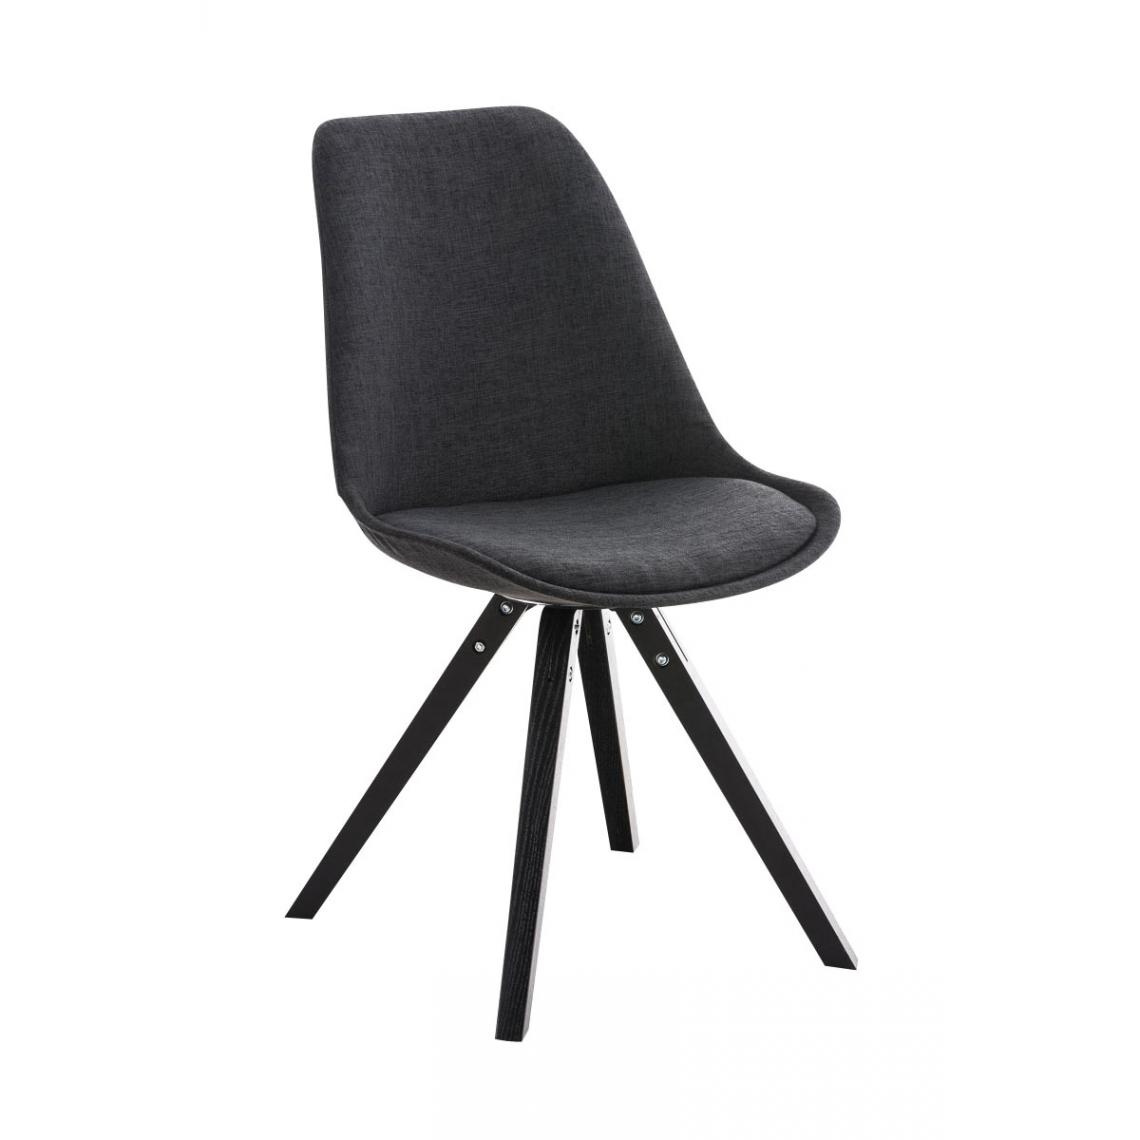 Icaverne - Superbe Chaise serie Manille tissu carré, noir couleur gris foncé - Chaises